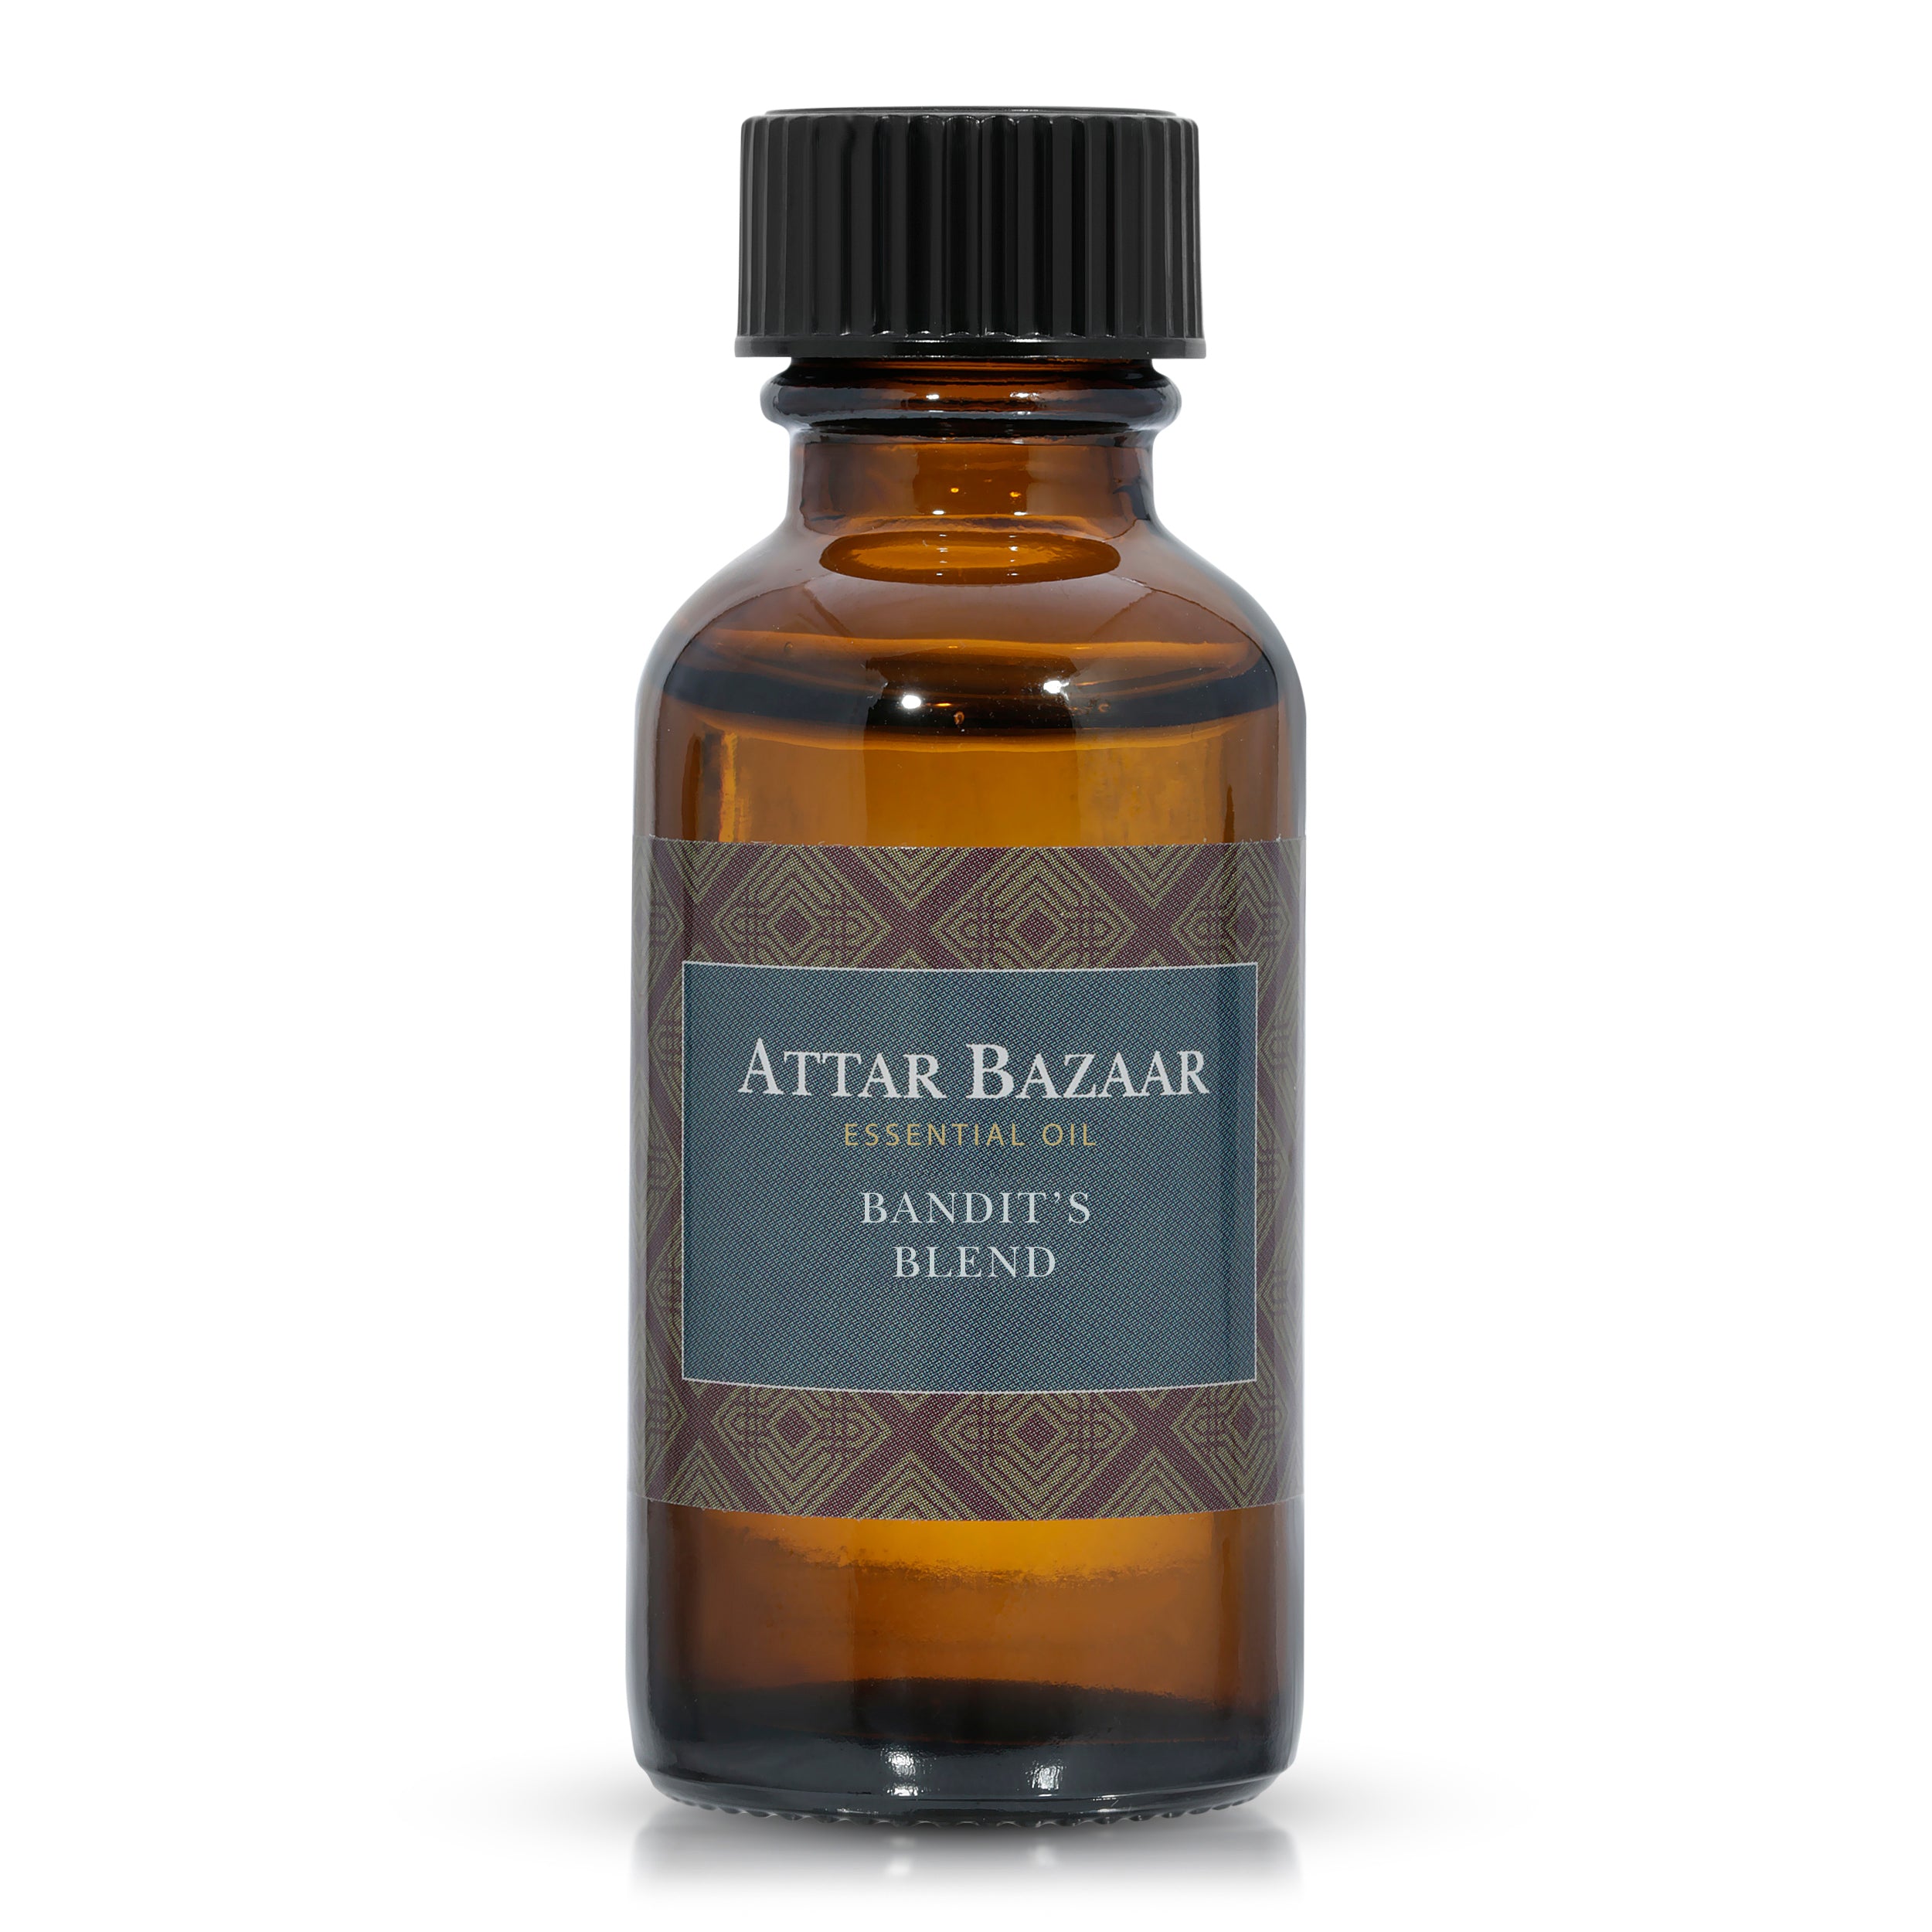 Attar Bazaar Bandit's Blend - Essential Oil Blend